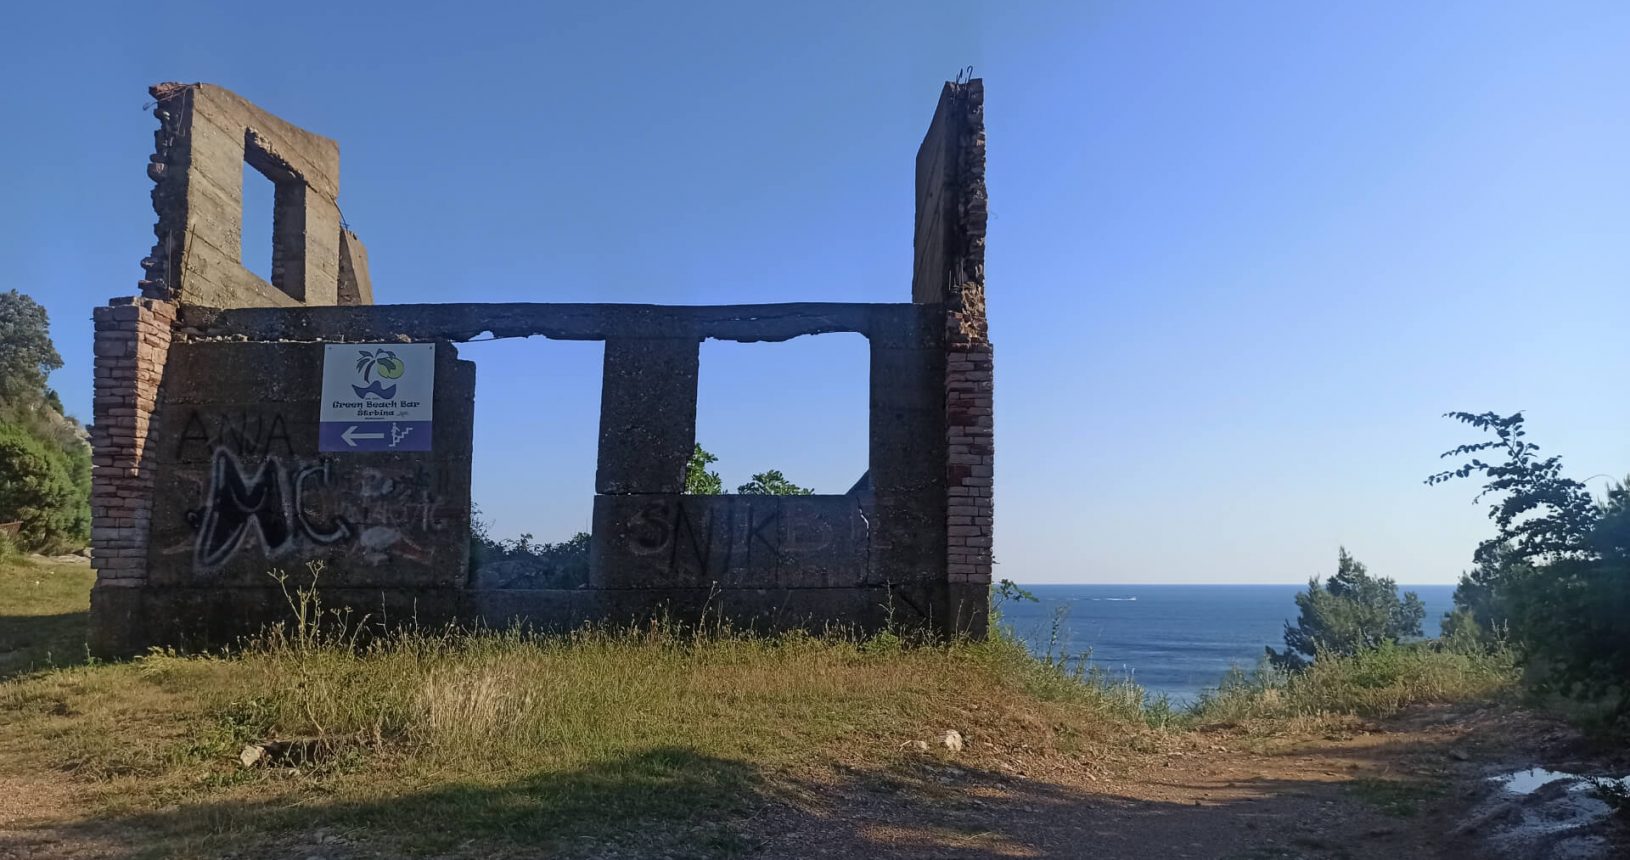 The ruins near Strbina Beach